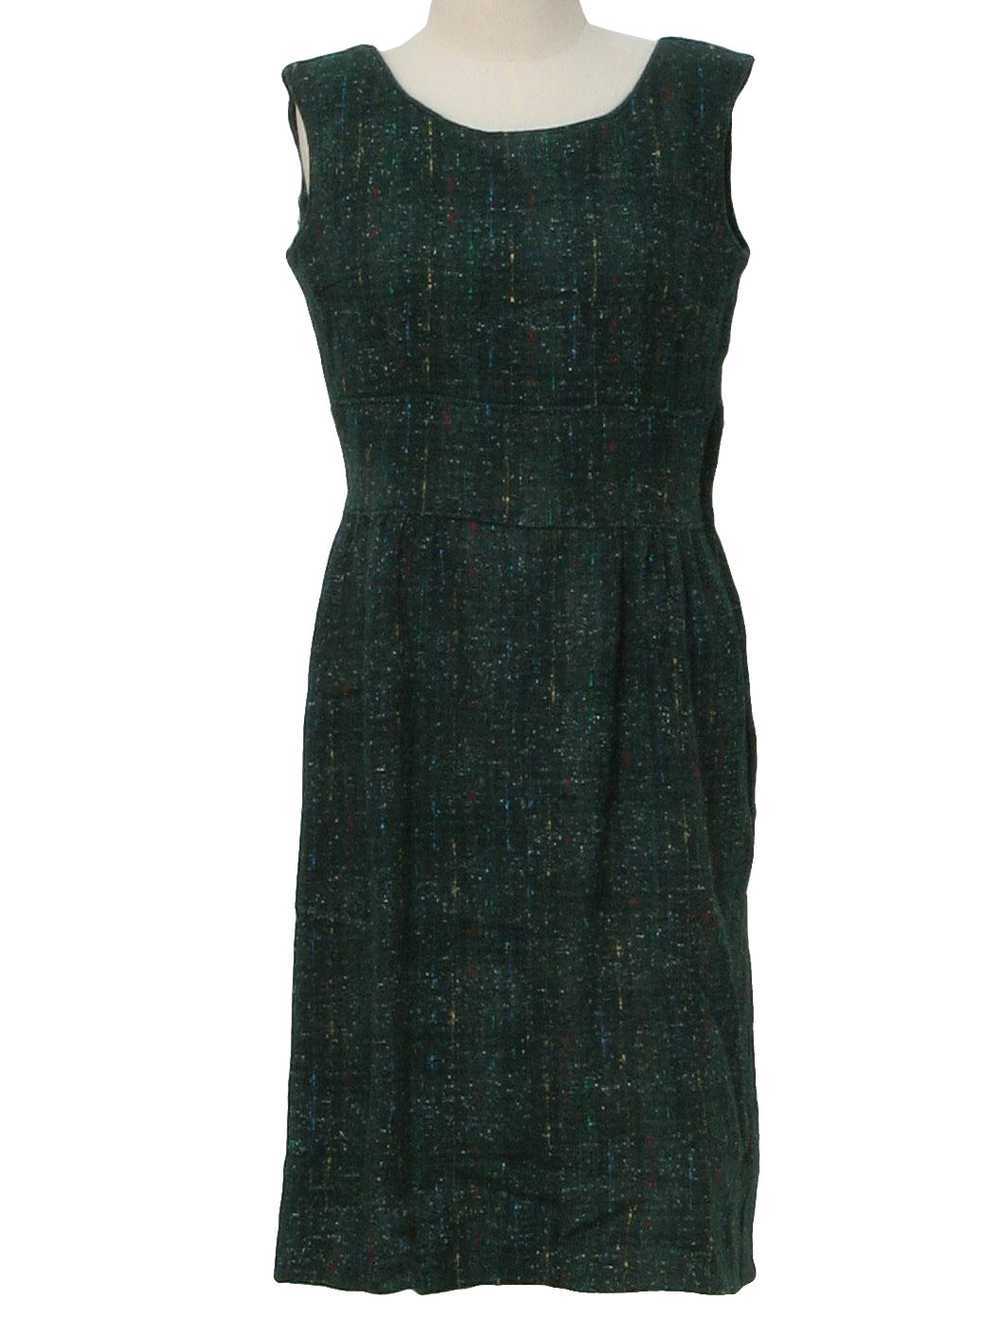 1960's Mod Jumper Dress - image 1